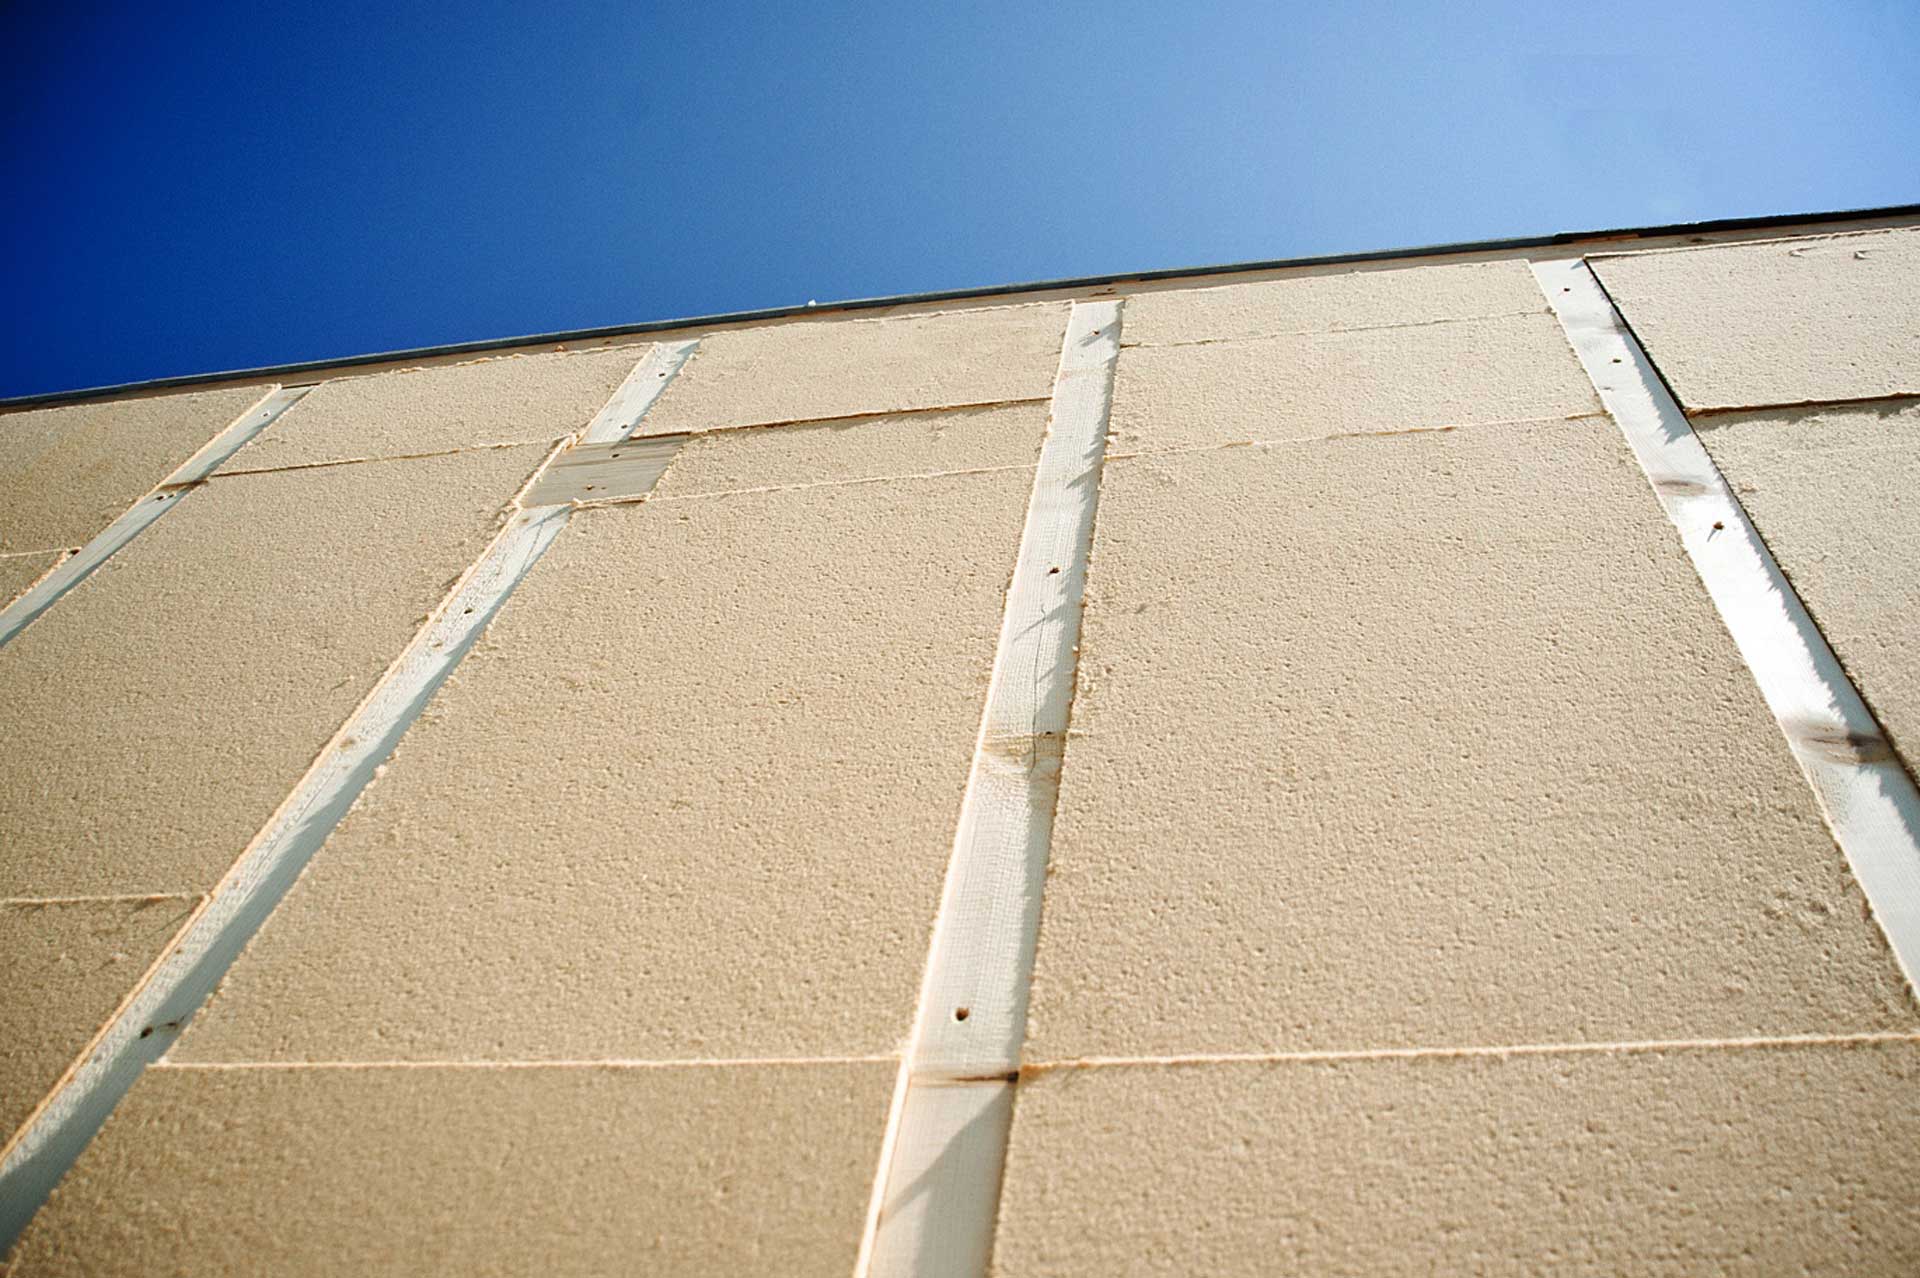 In primo piano si vedono pannelli isolanti in fibra di legno posati tra i listelli di una parete a telaio. Sullo sfondo, oltre la gronda, cielo azzurro.